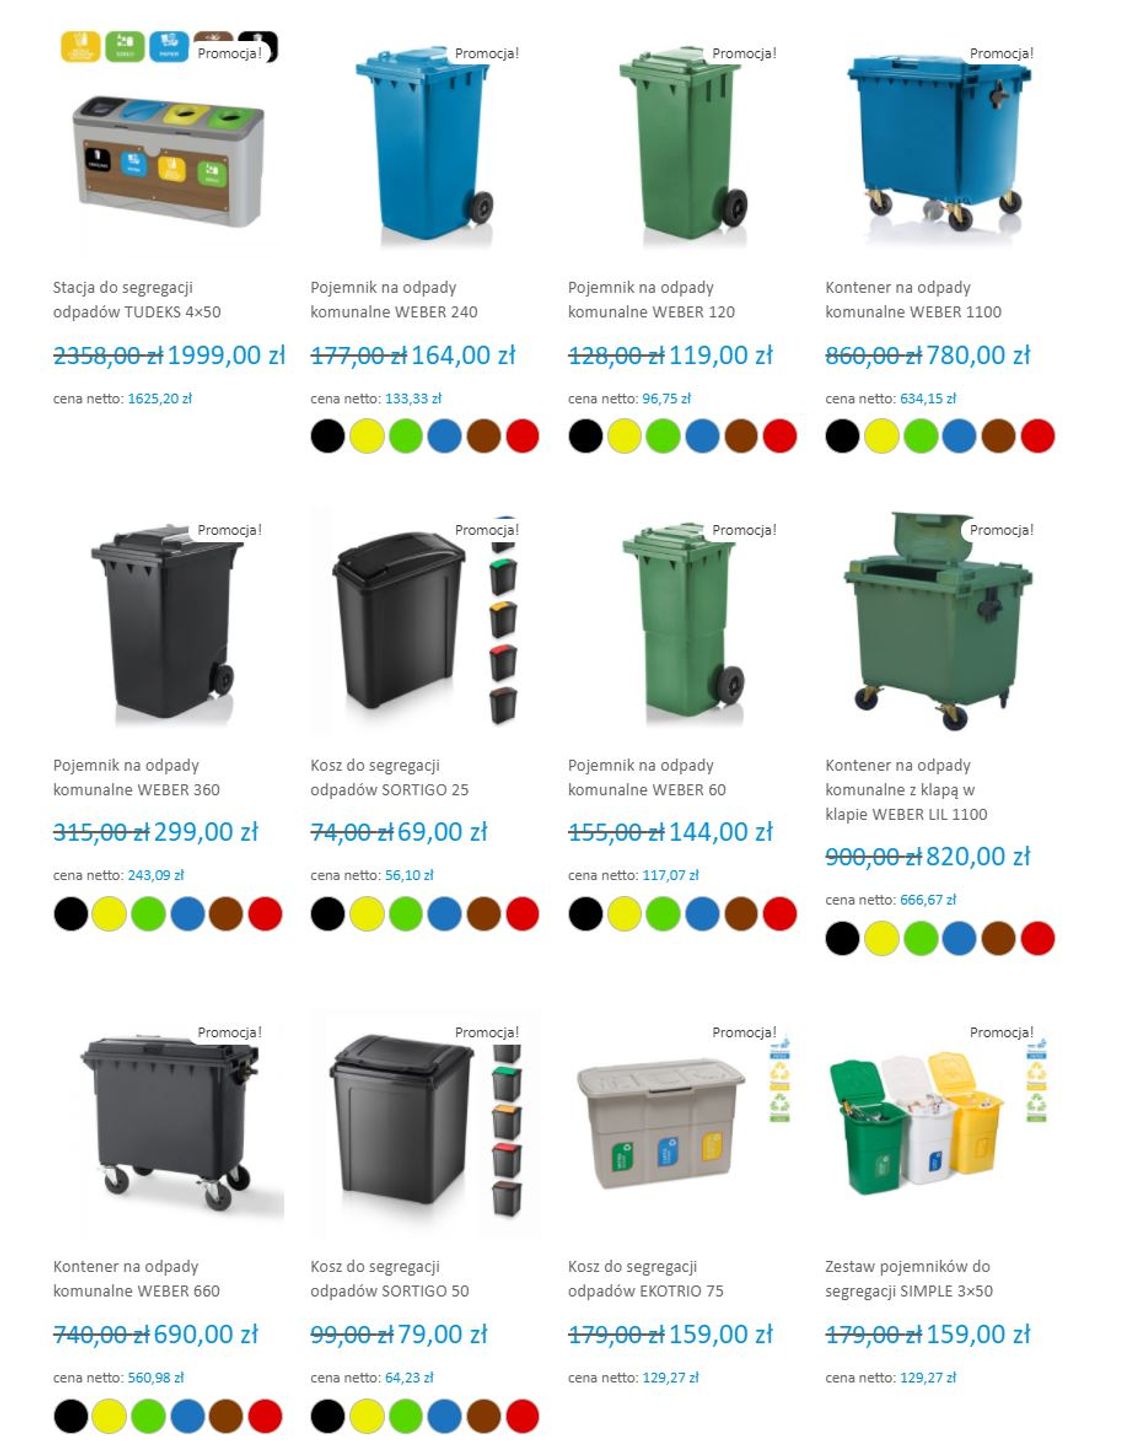 Pojemniki na odpady, kubły, śmietniki - jakie kosze na śmieci wybrać?